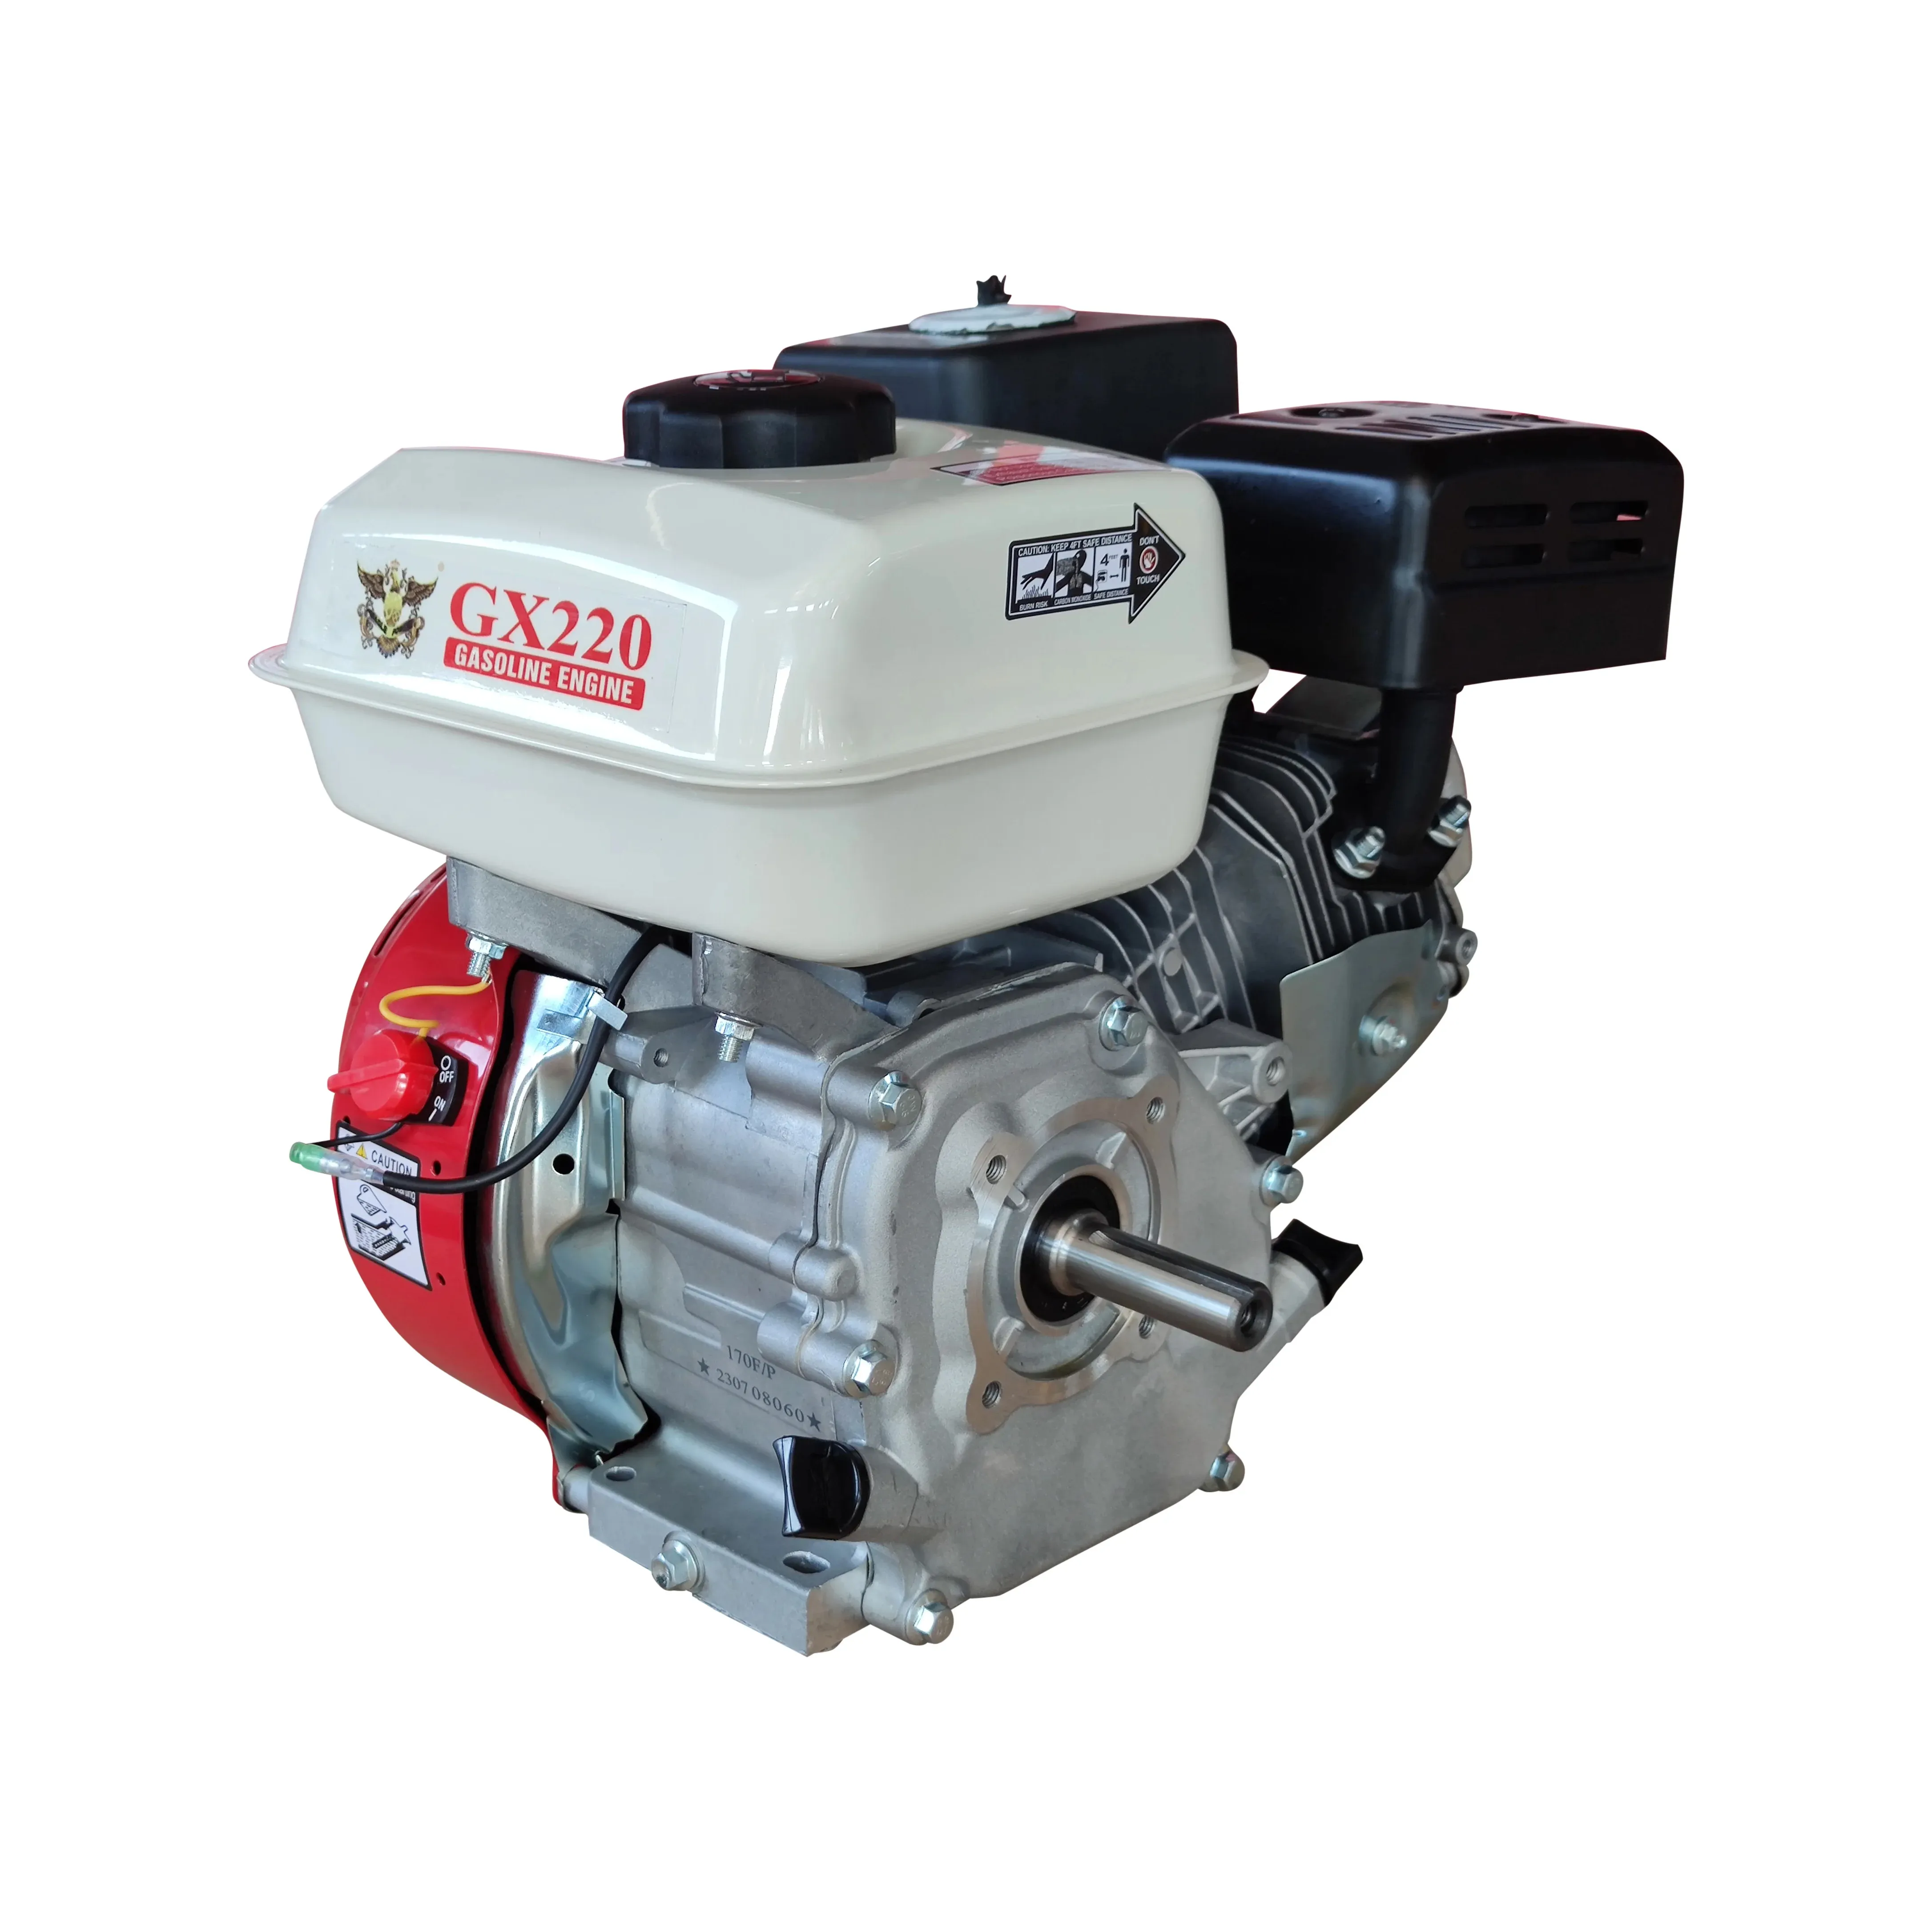 Popular high quality Gasoline Engine petrol engine GX220 7.5HP 170F